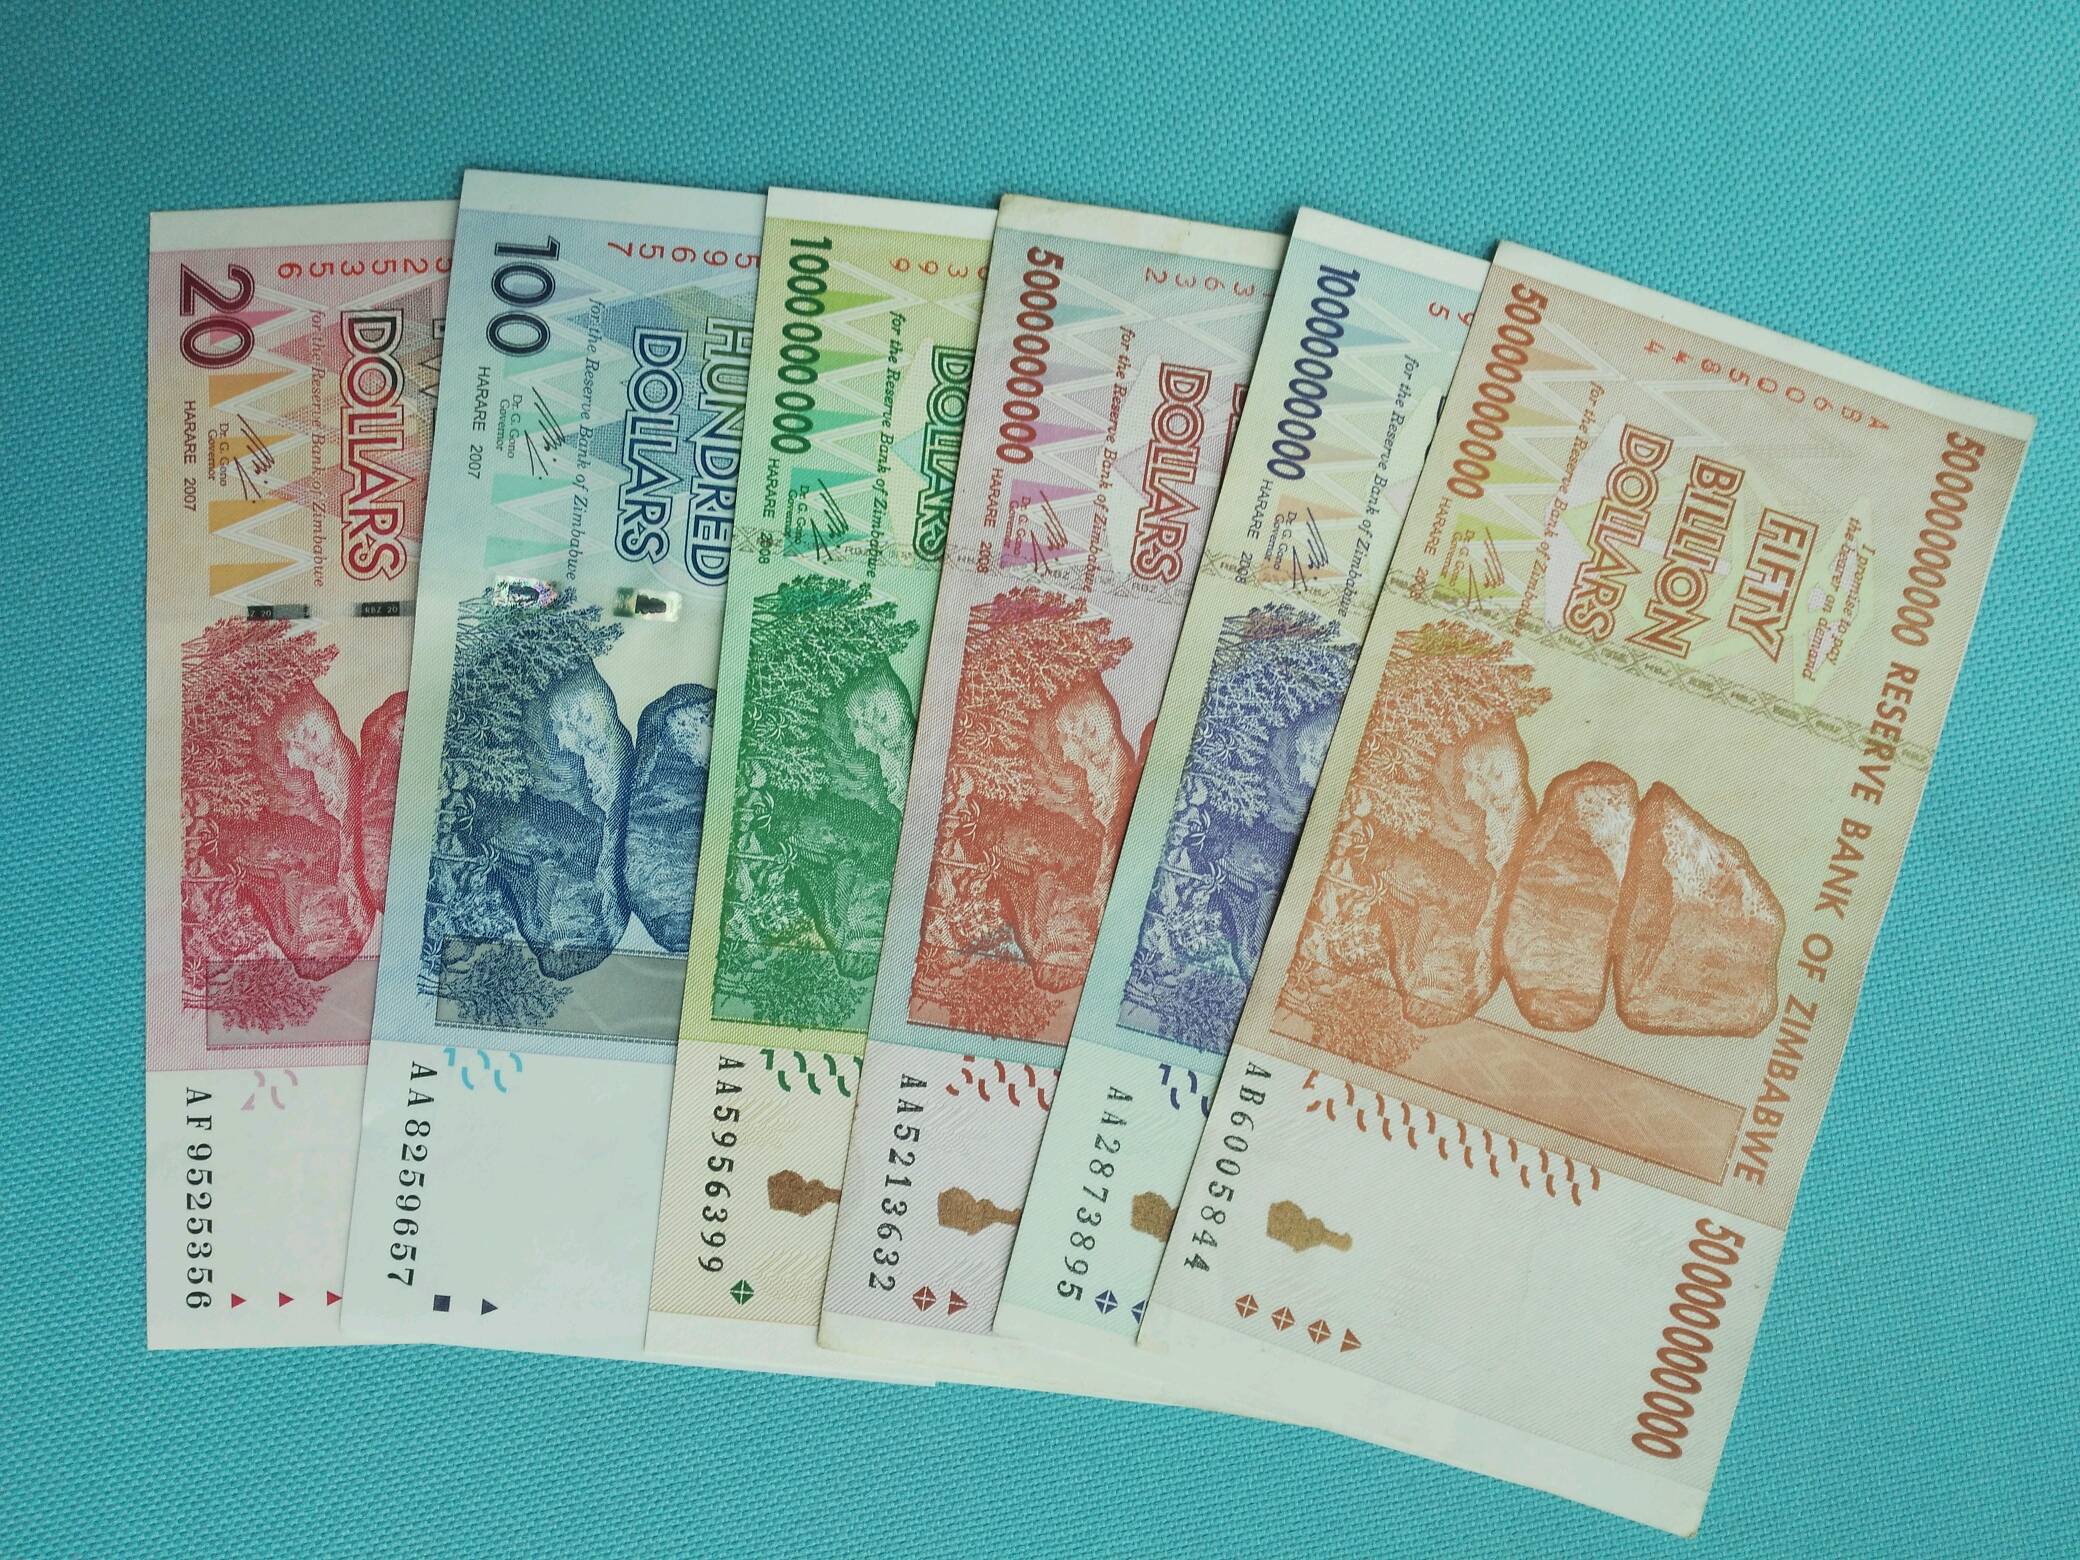 币——一百万亿和五百万亿津巴布韦发行了世界上最大面值的货币